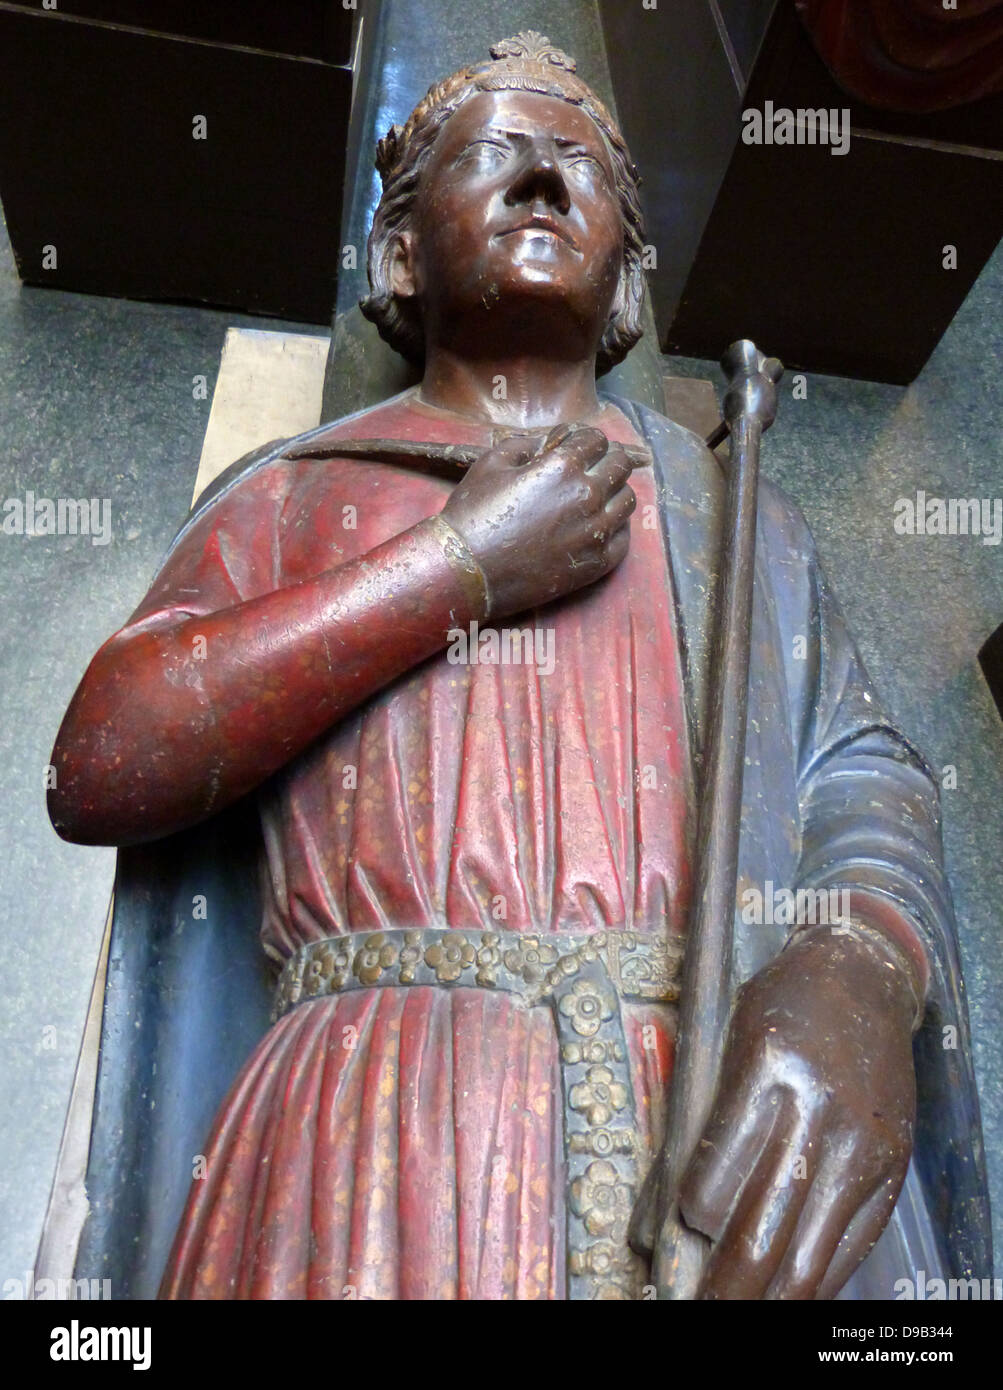 Escultura en yeso de una gran mano de estatua del Xixto